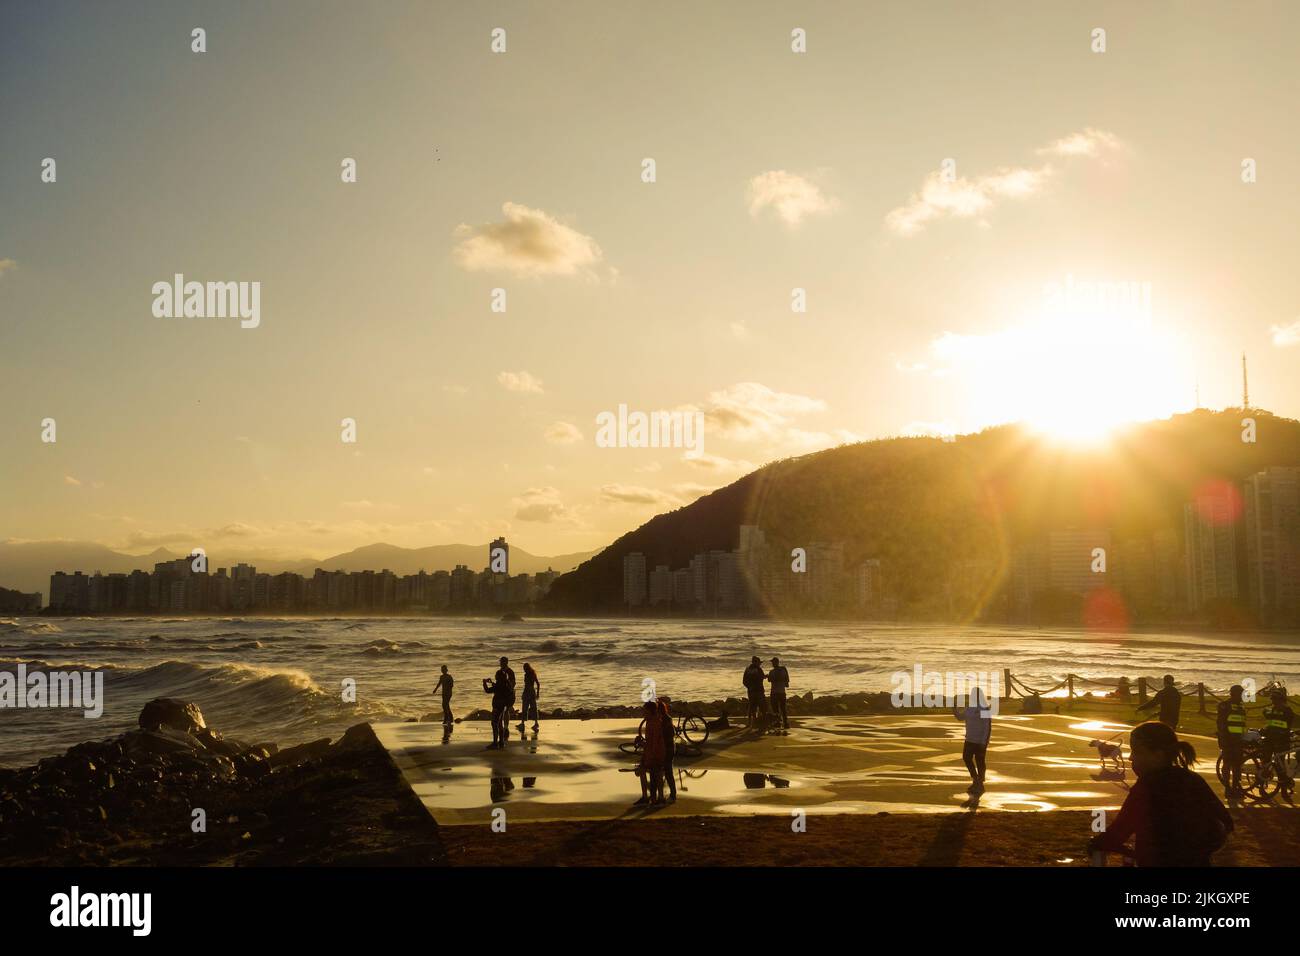 Santos, Brasilien: Menschen, die Spaß am Meer bei Sonnenuntergang haben. Reise- und Sommerkonzept Stockfoto